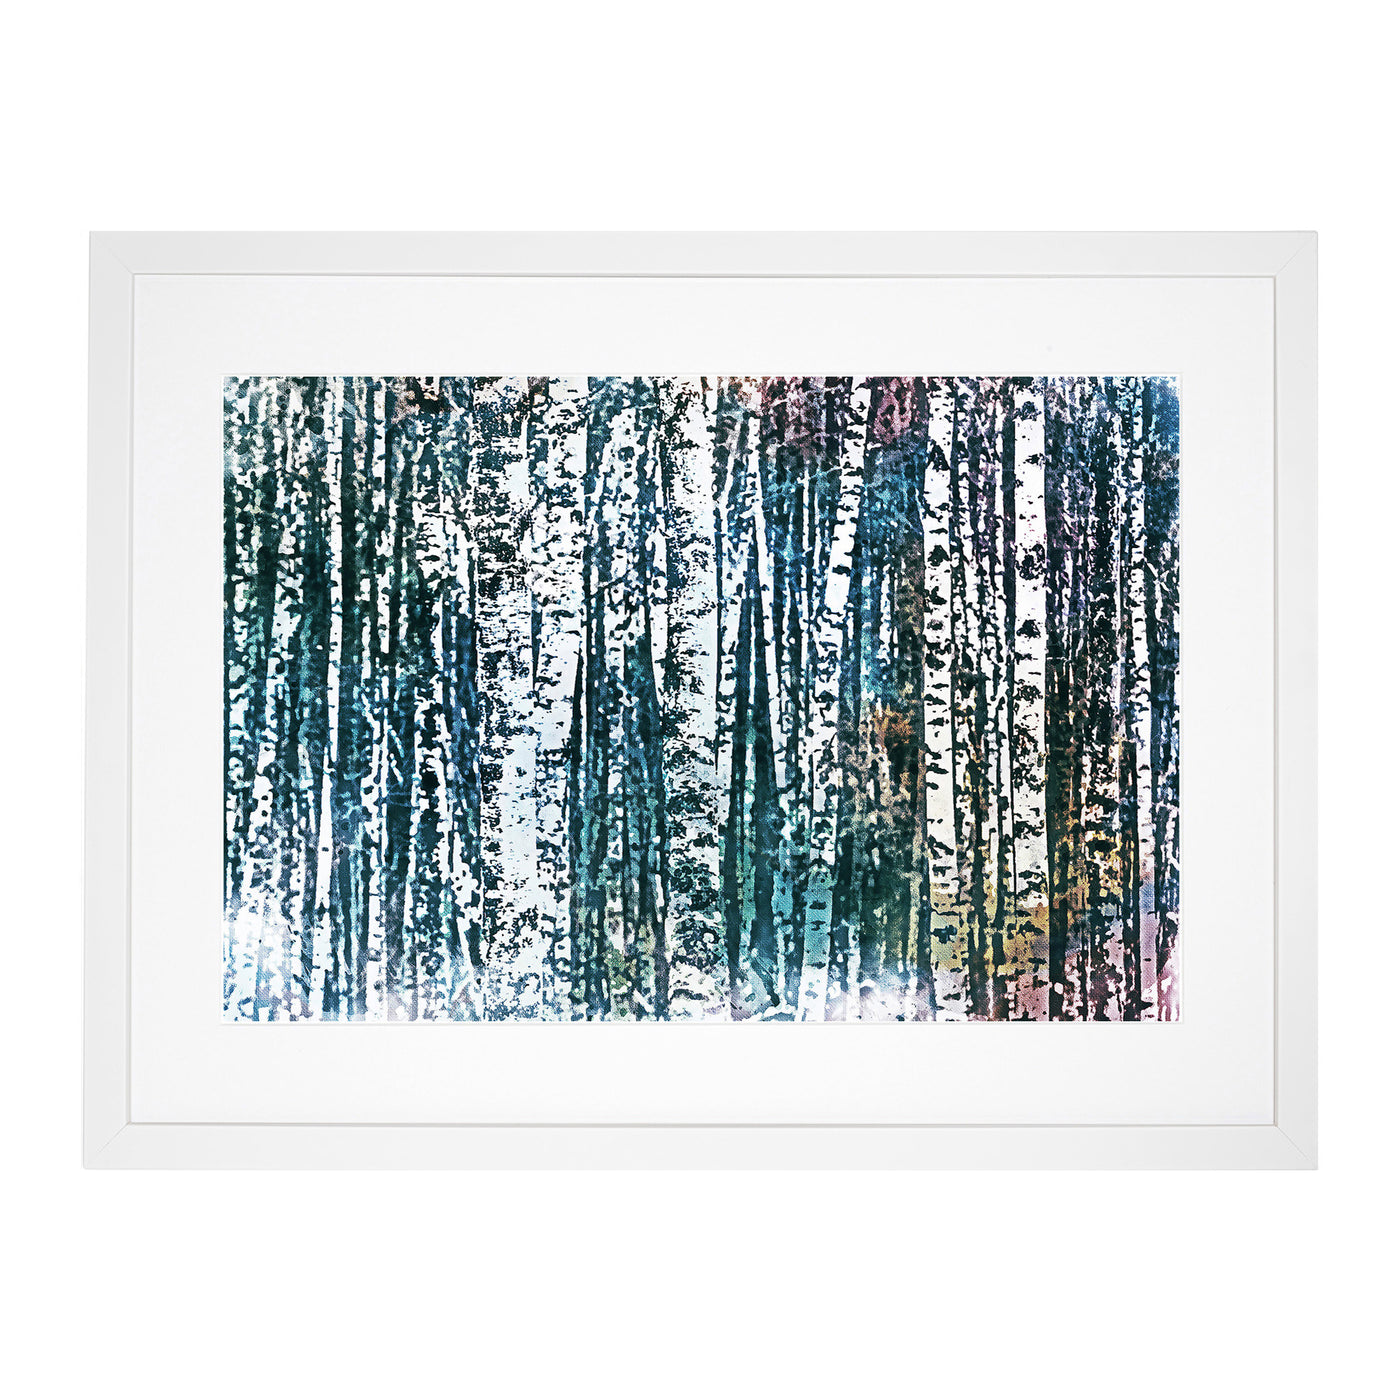 A Birch Treeforest